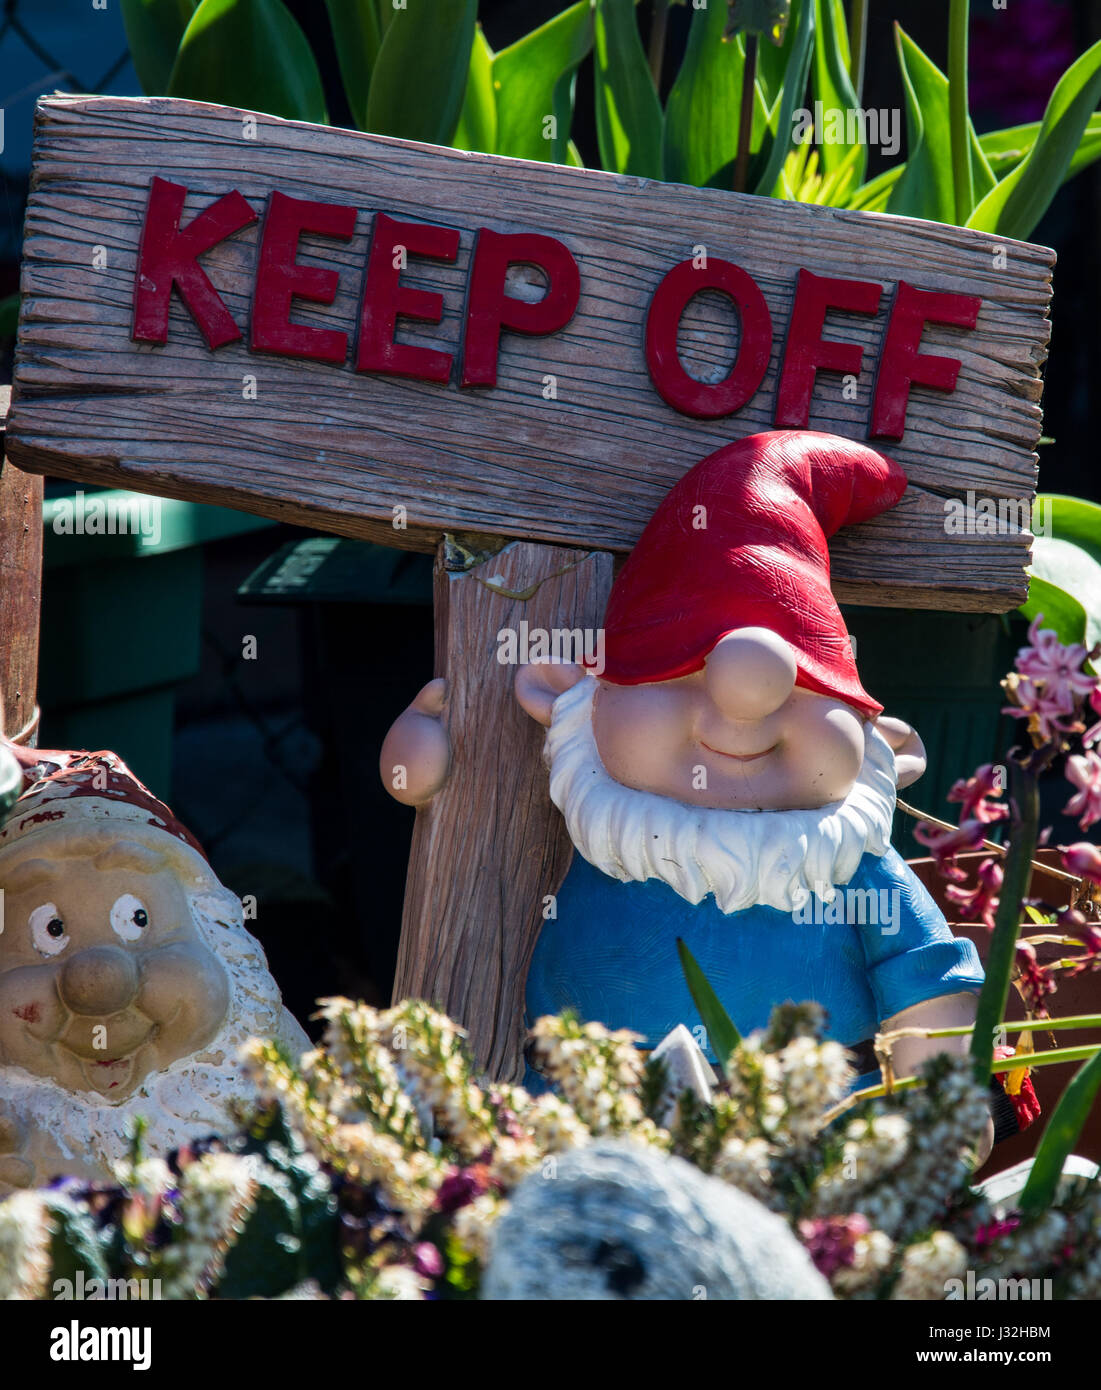 Un enano gnomo de jardín con un cartel que dice "Keep Off'. Alegre jardín ornamental. Podría representar la idea de privacidad - en línea o de lo contrario. Foto de stock